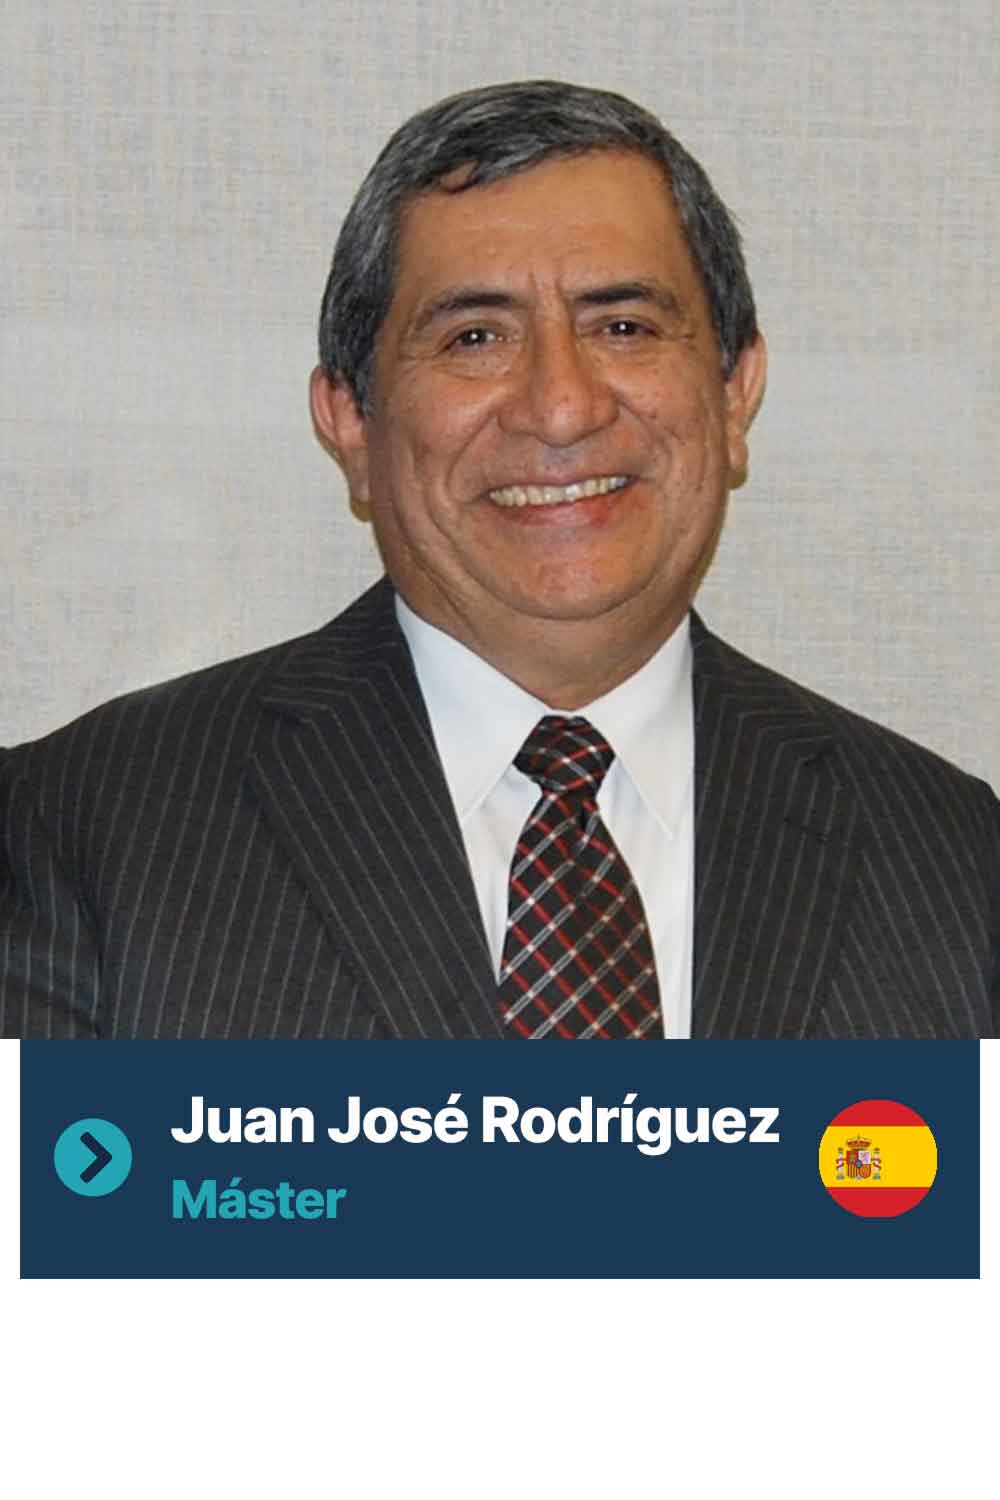 Juan José Rodríguez